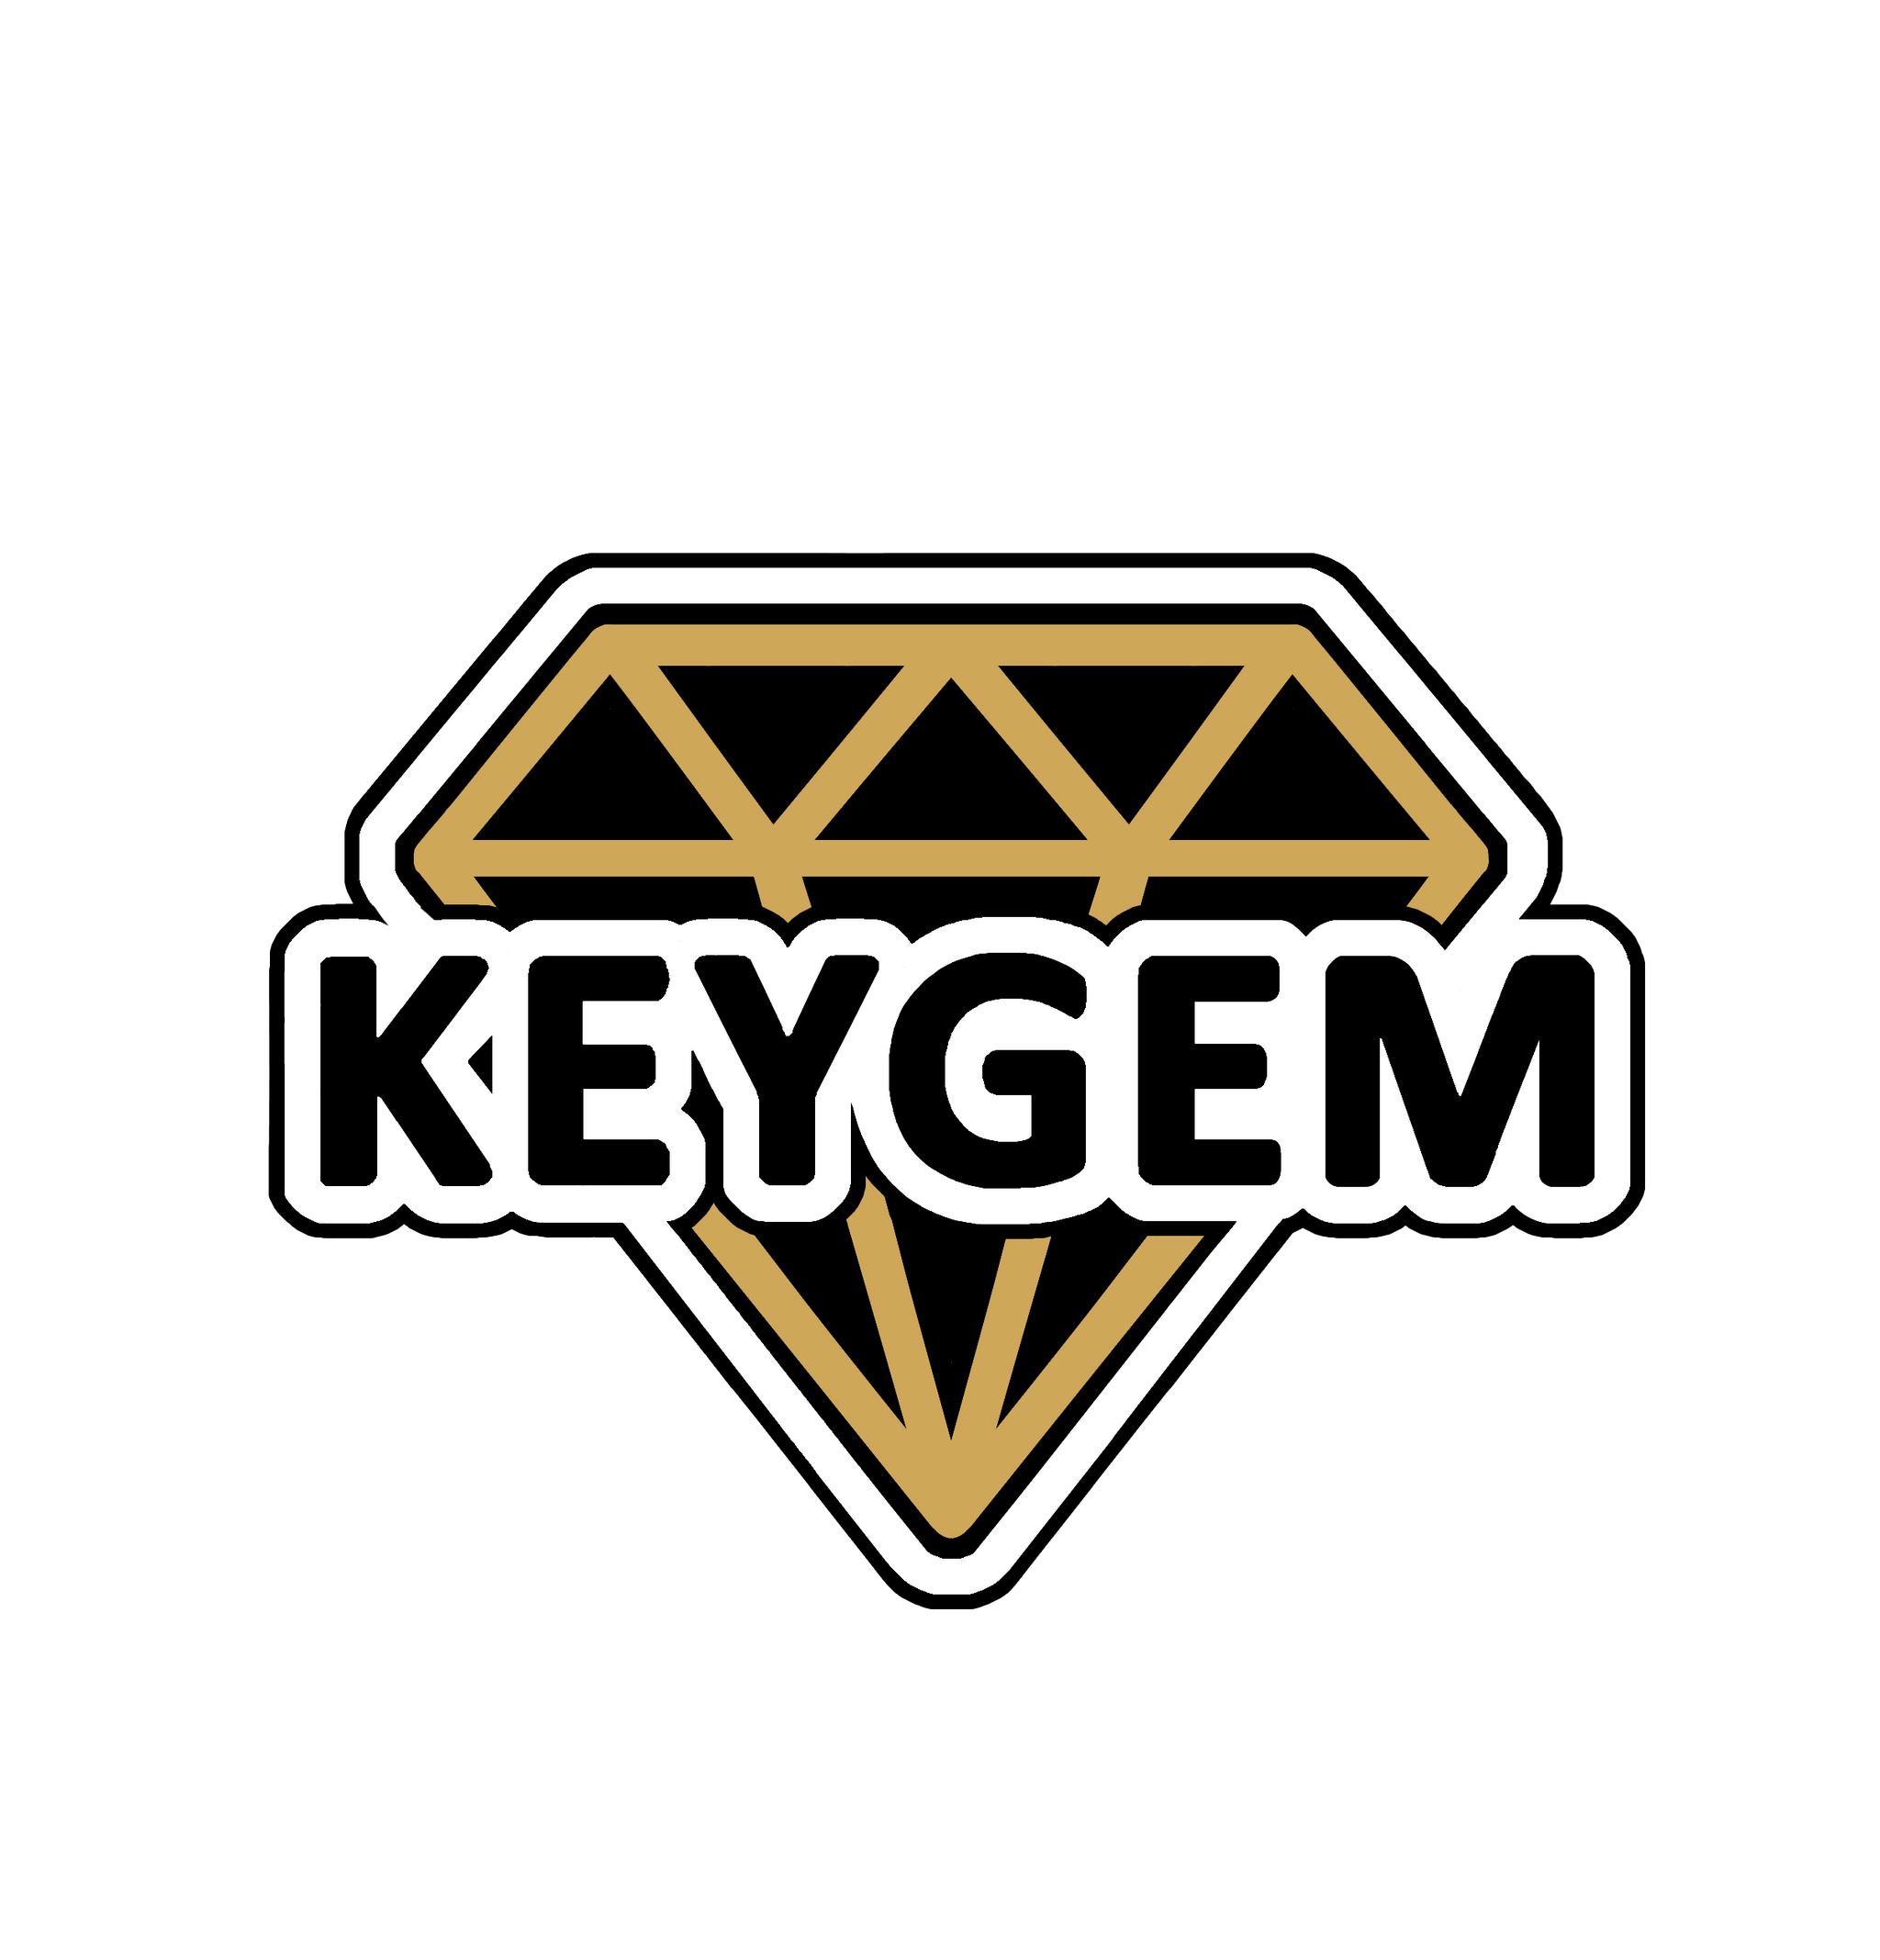 keygem.com